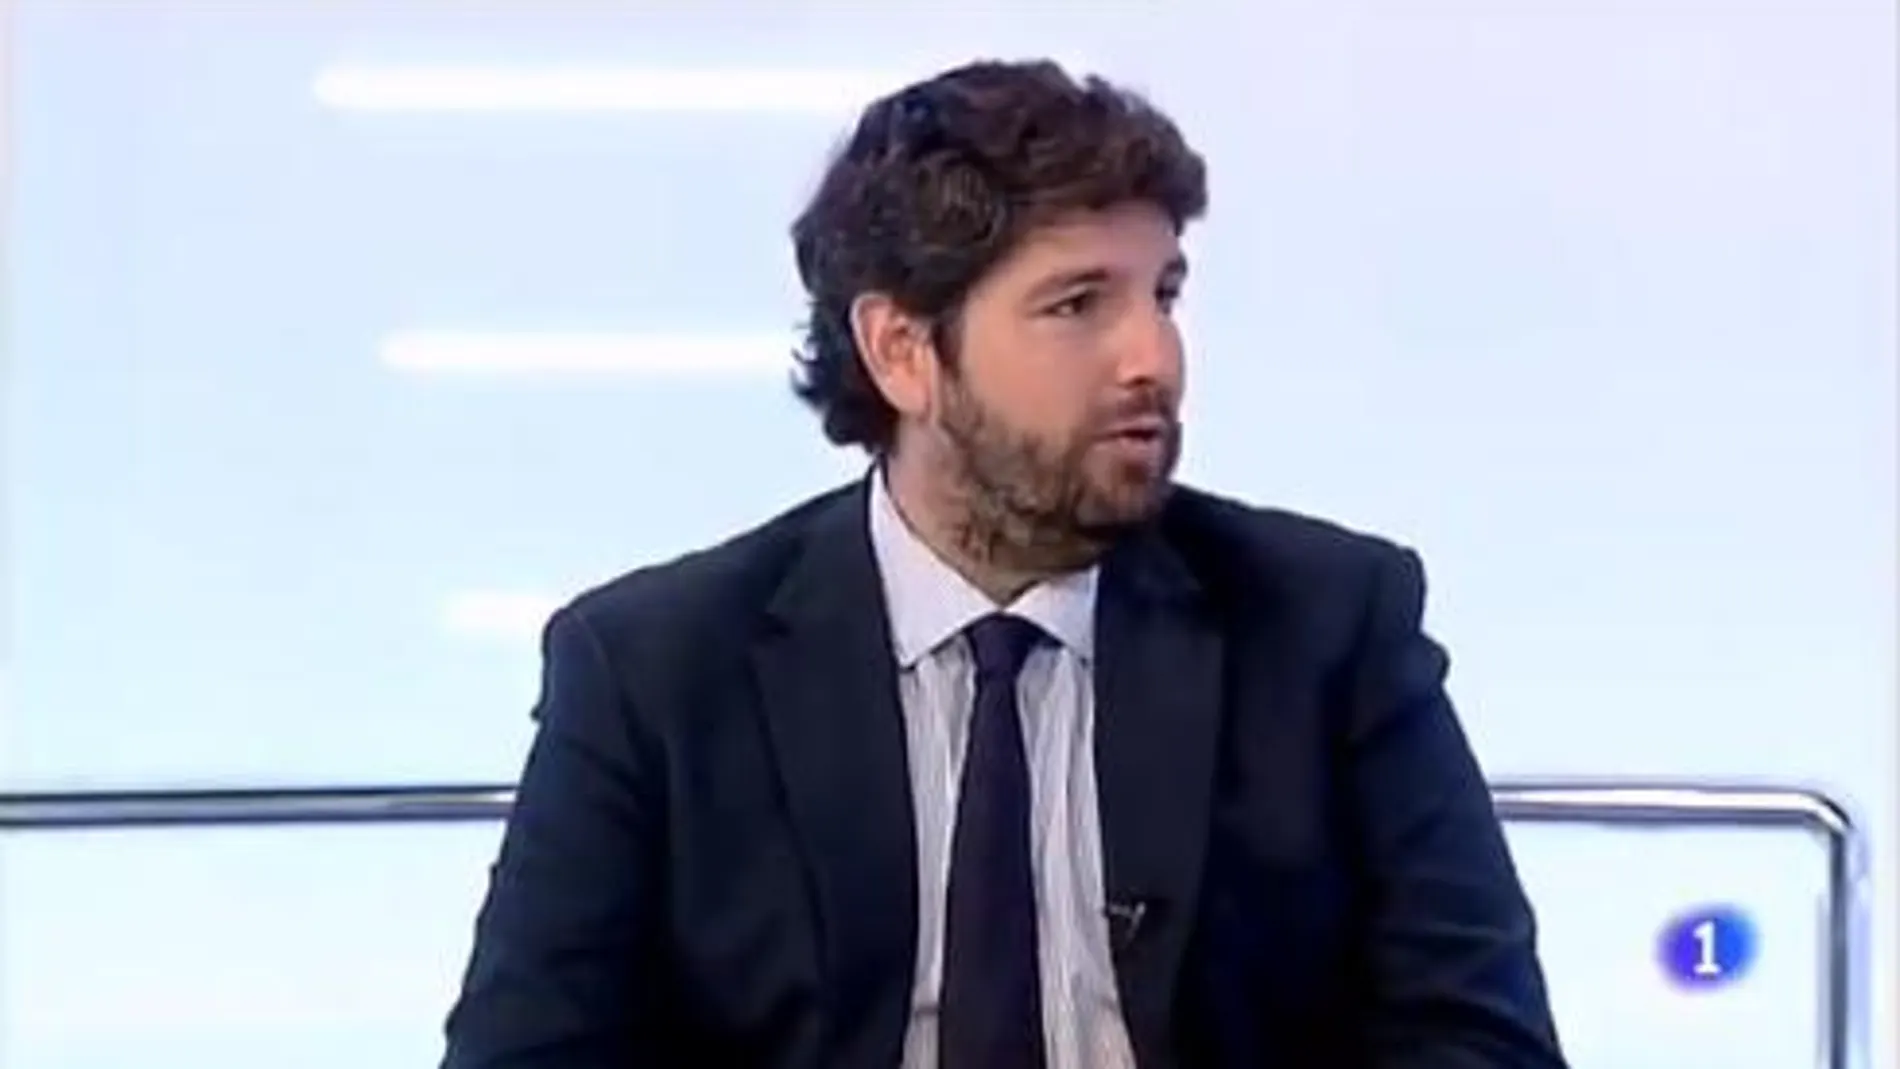 Tremendo lapsus del presidente de Murcia en TVE